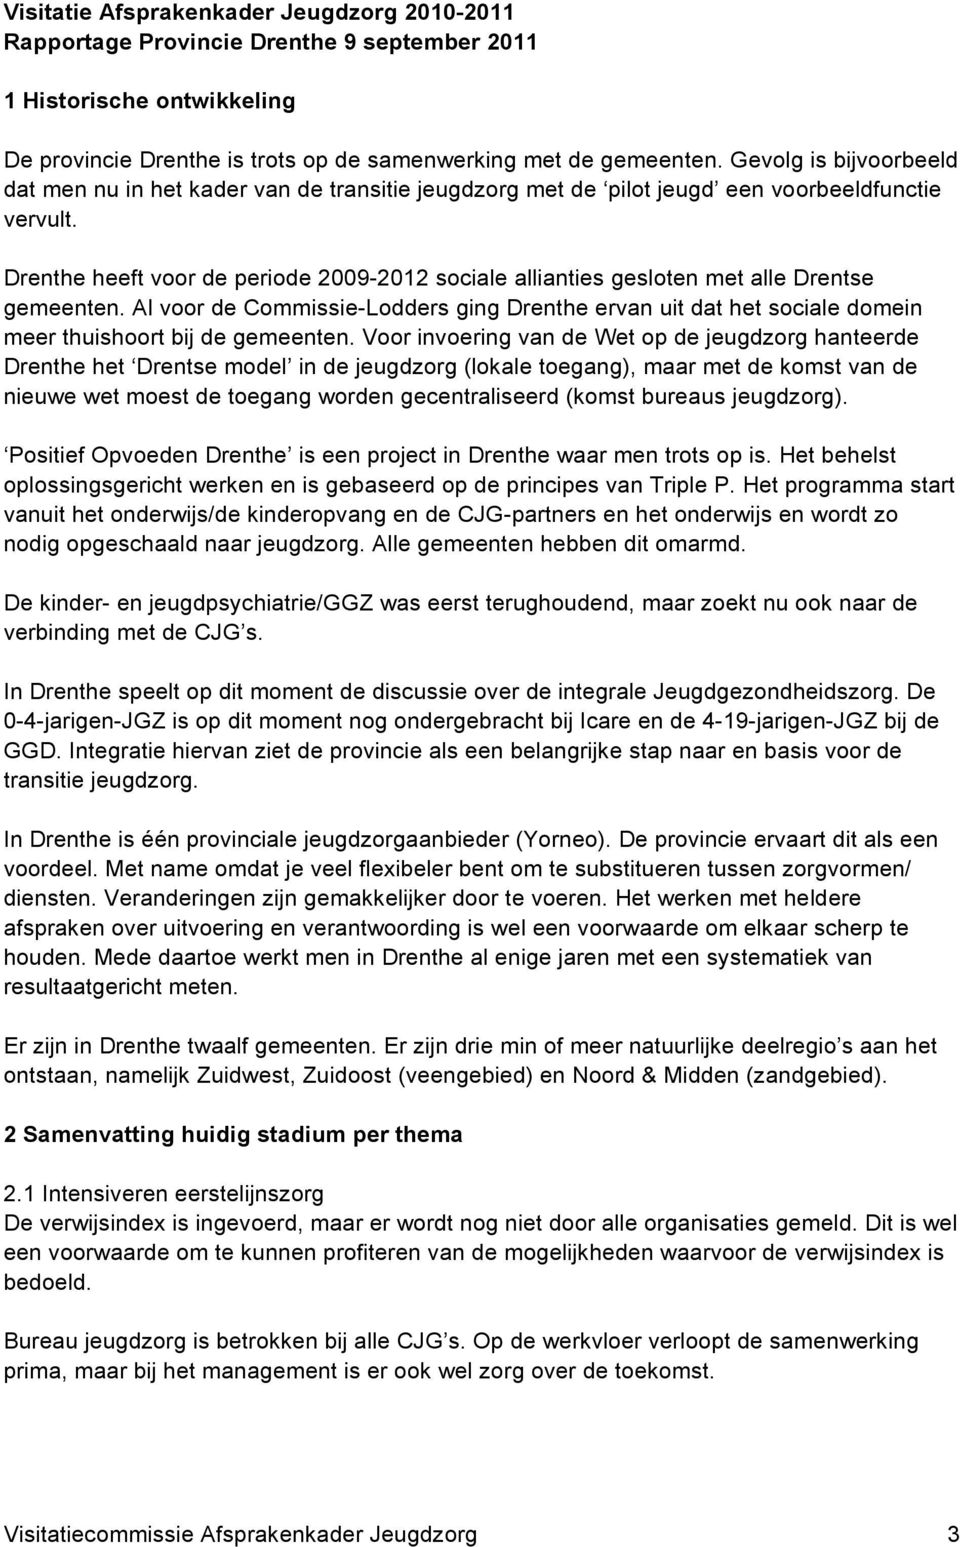 Drenthe heeft voor de periode 2009-2012 sociale allianties gesloten met alle Drentse gemeenten.